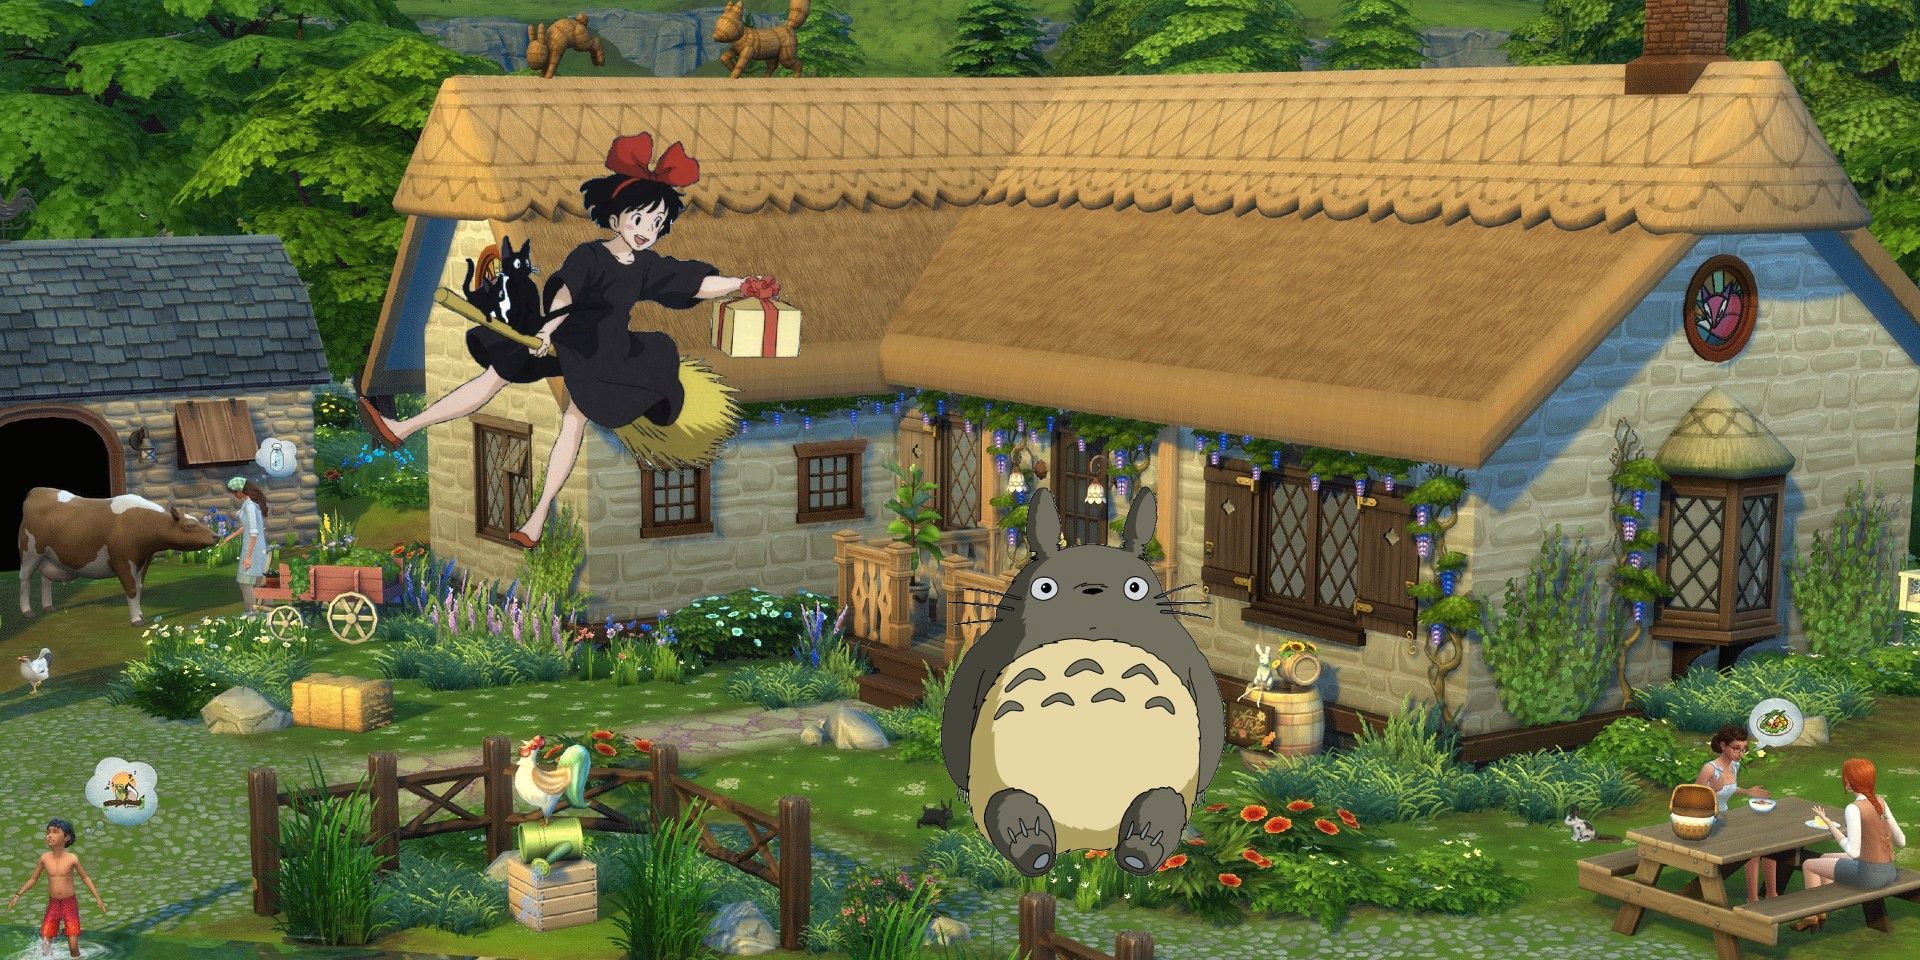 La pequeña casa inspirada en Studio Ghibli de Sims 4 Fan obtiene la aprobación del desarrollador